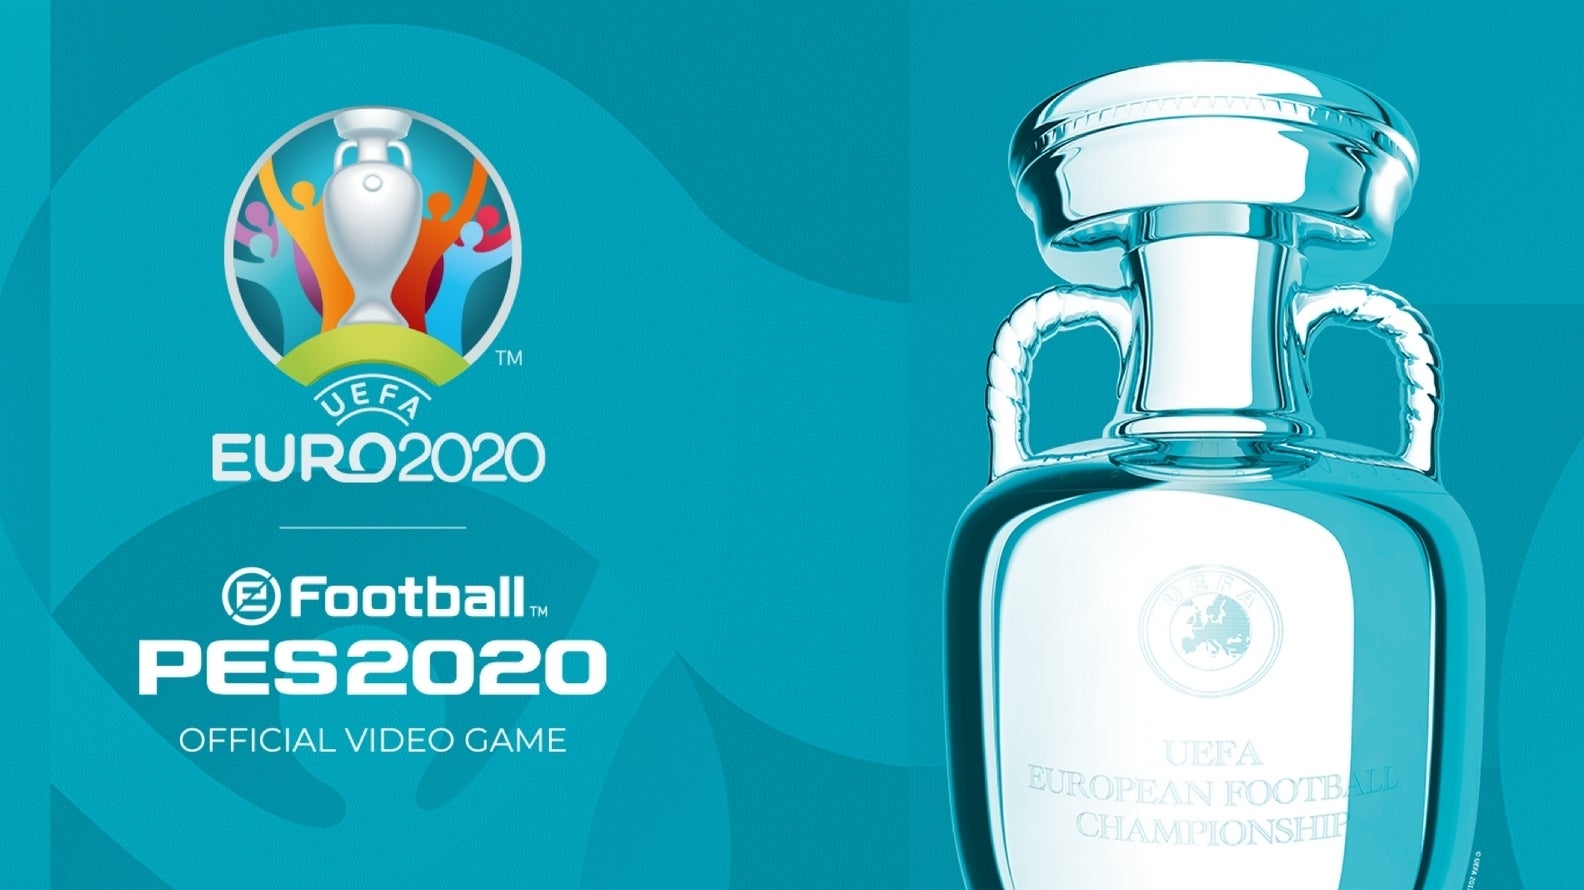 Bilder zu PES 2020: Das Update zur UEFA Euro 2020 erscheint am 4. Juni, feiert eure eigene Europameisterschaft